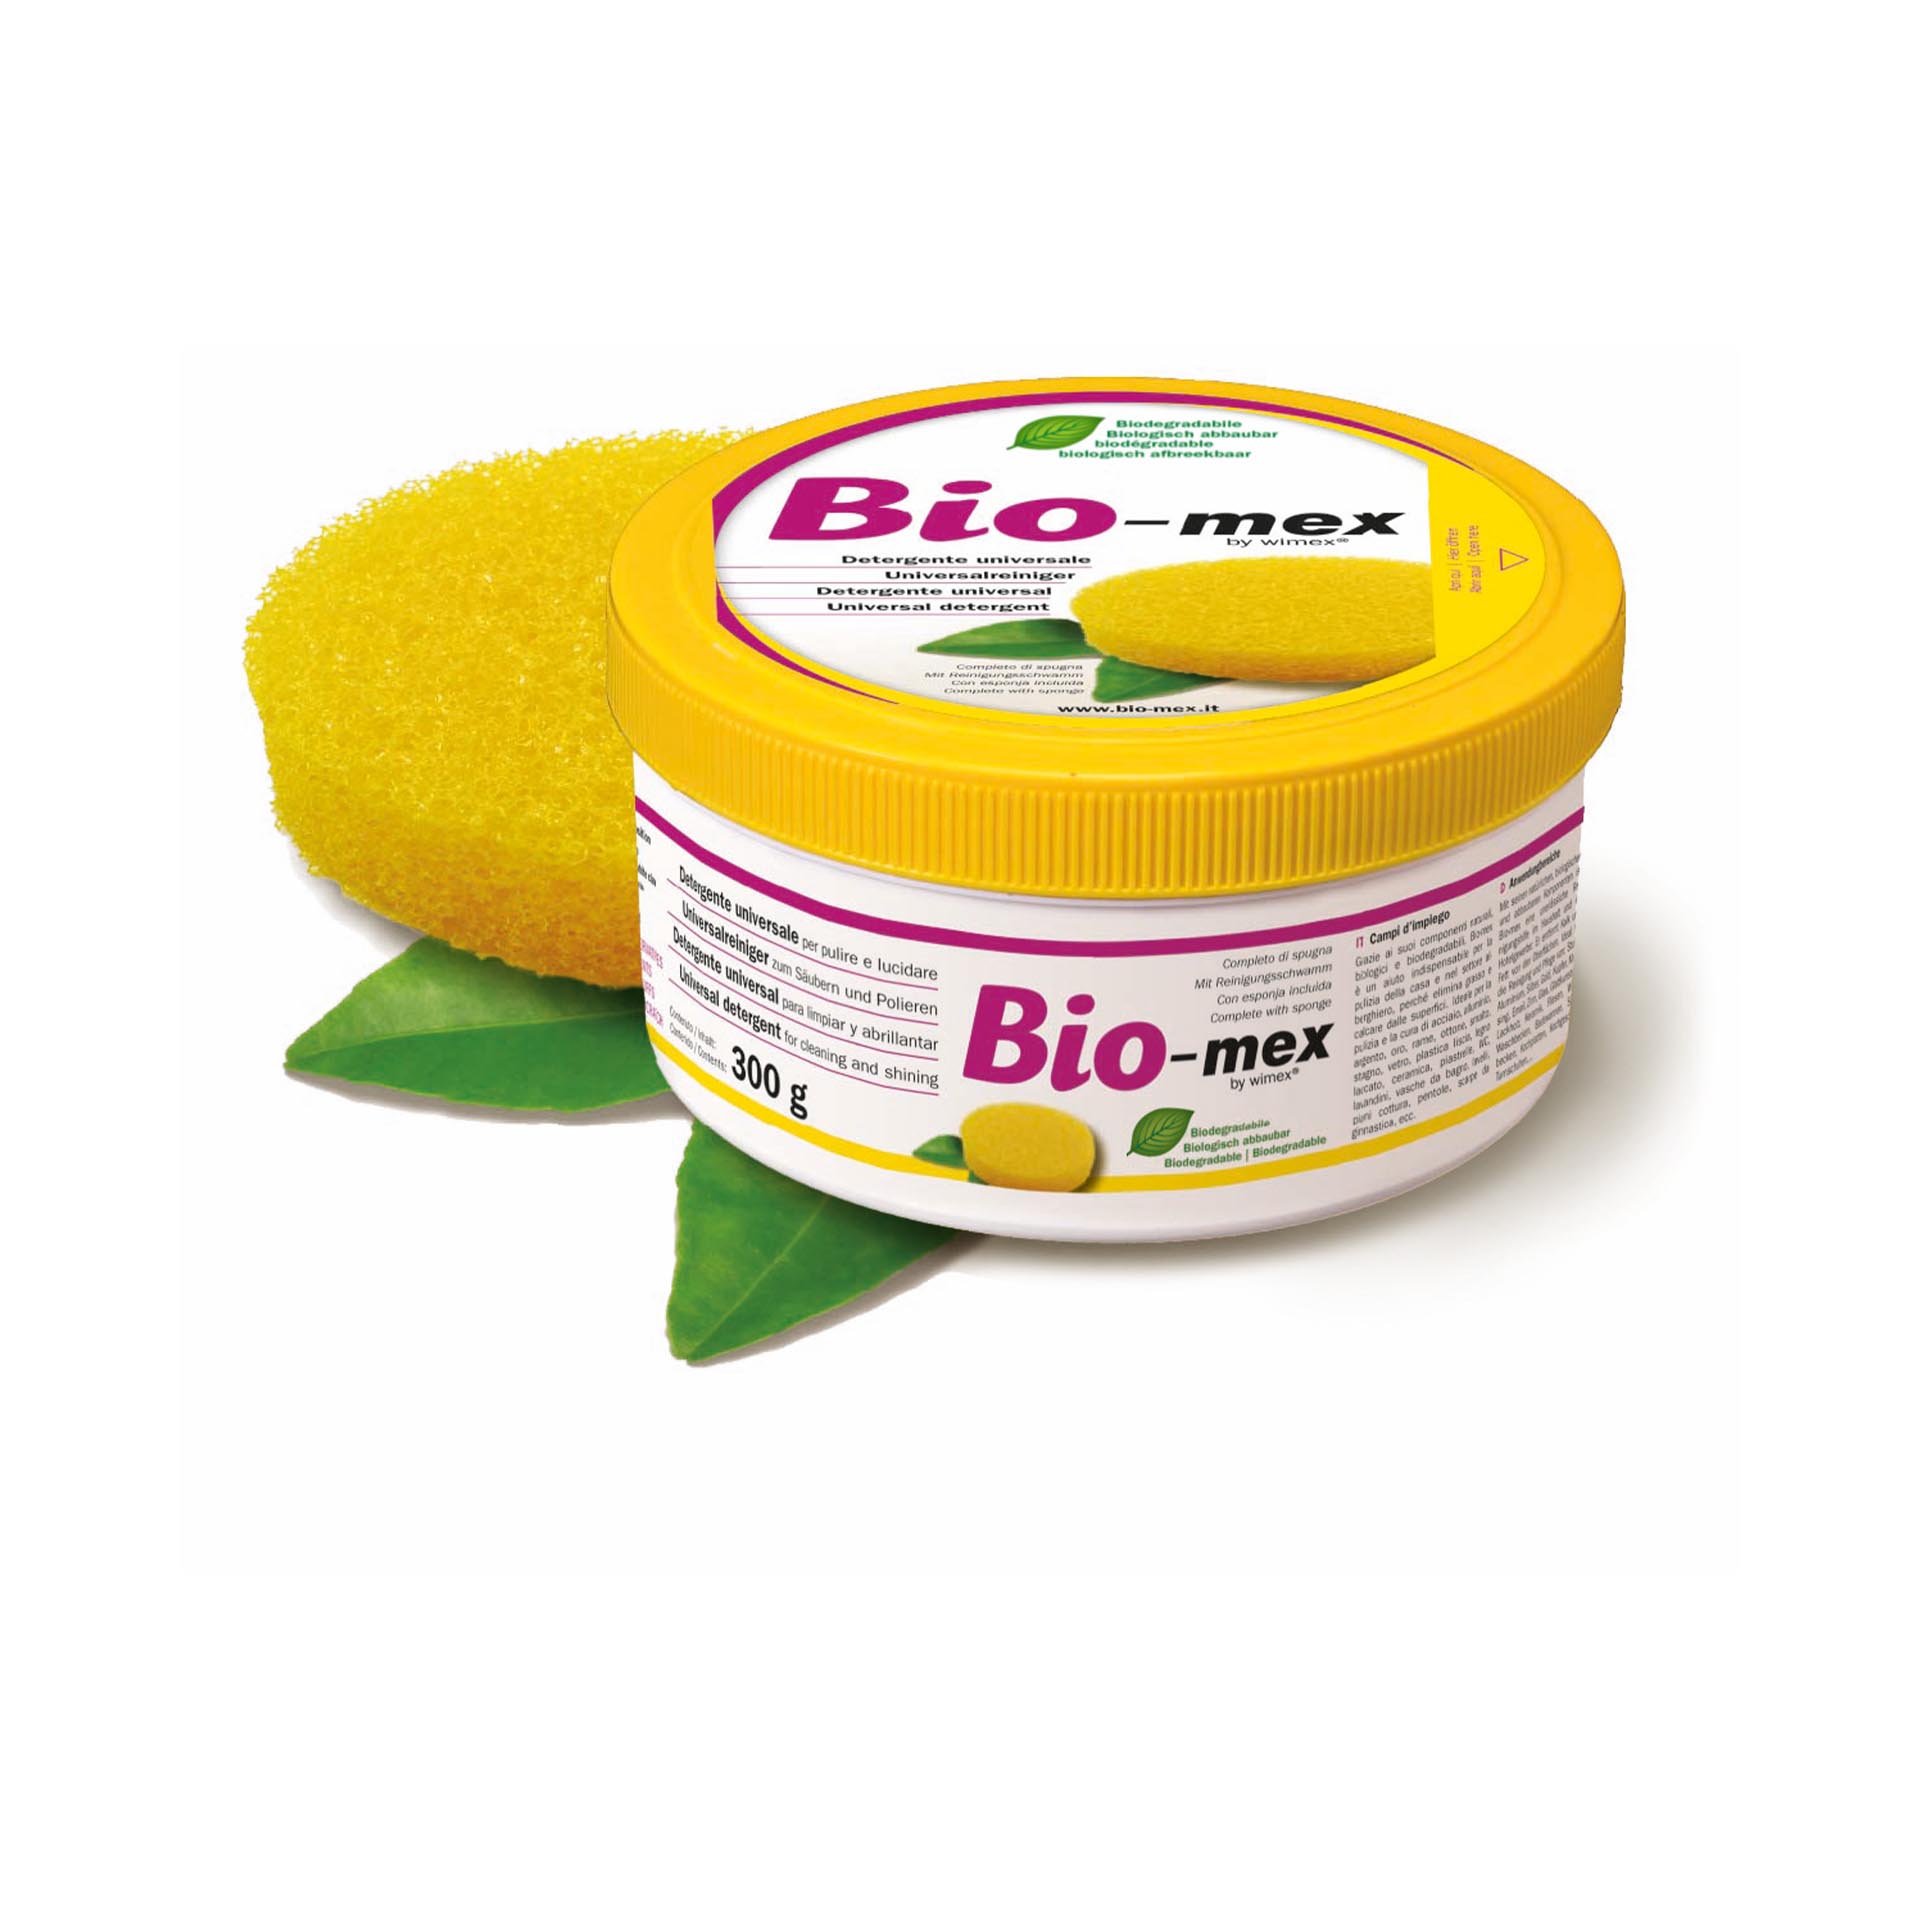 Detergente Solido Naturale Biodegradabile Per La Casa Bio-mex, , large